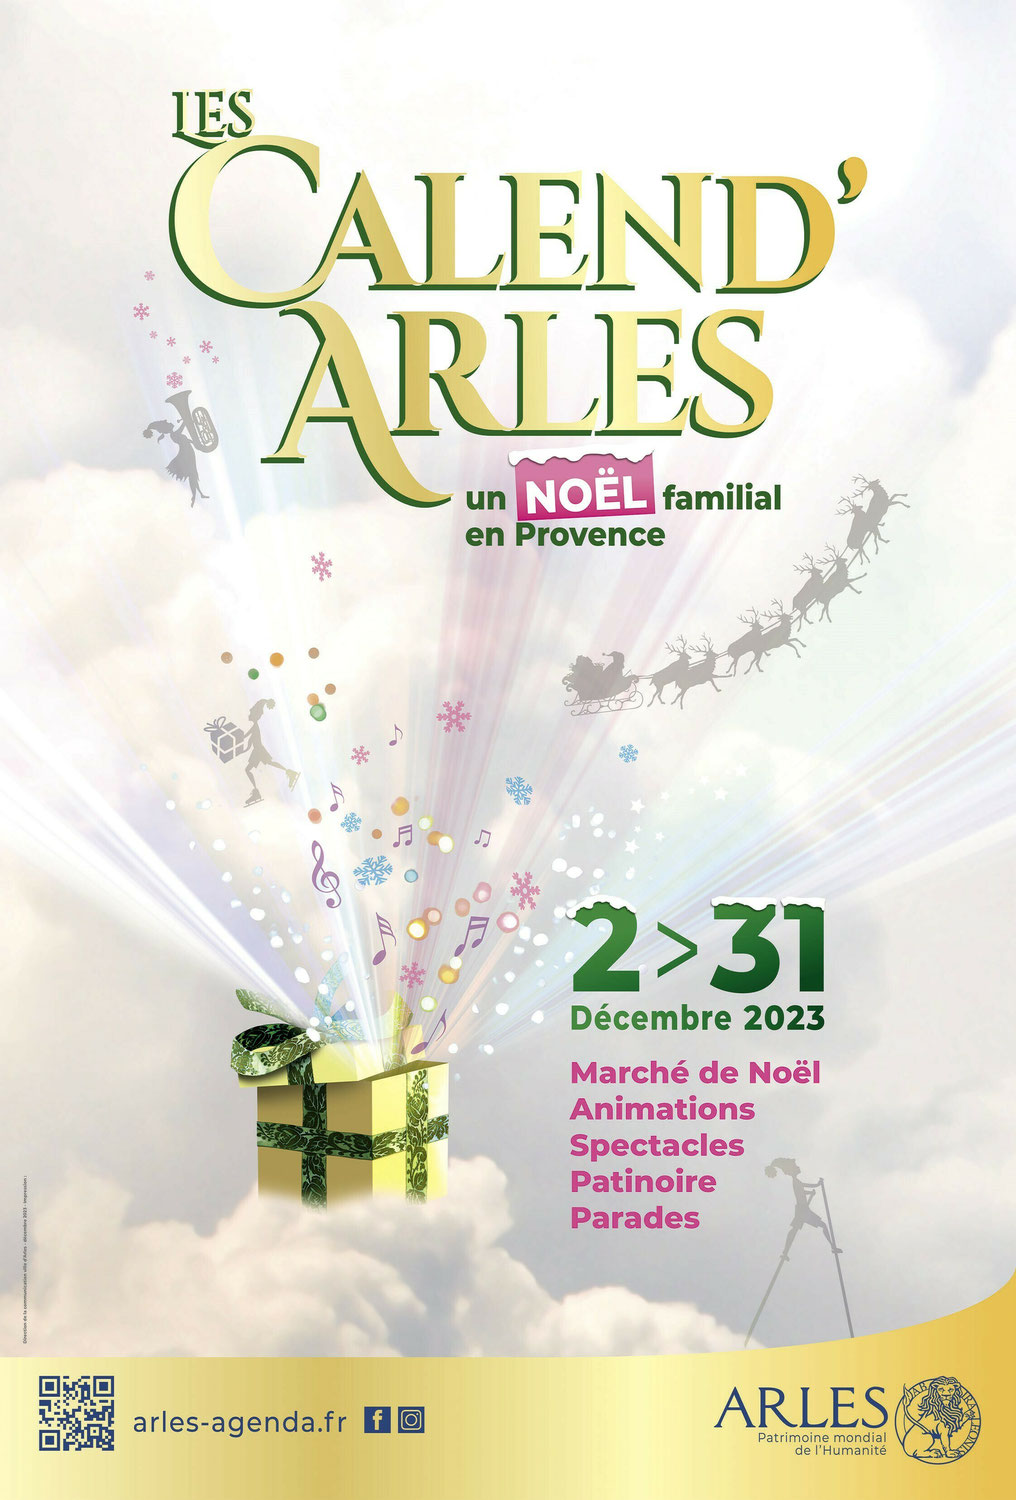 Les Calend’Arles 2023 du 2 au 31 décembre